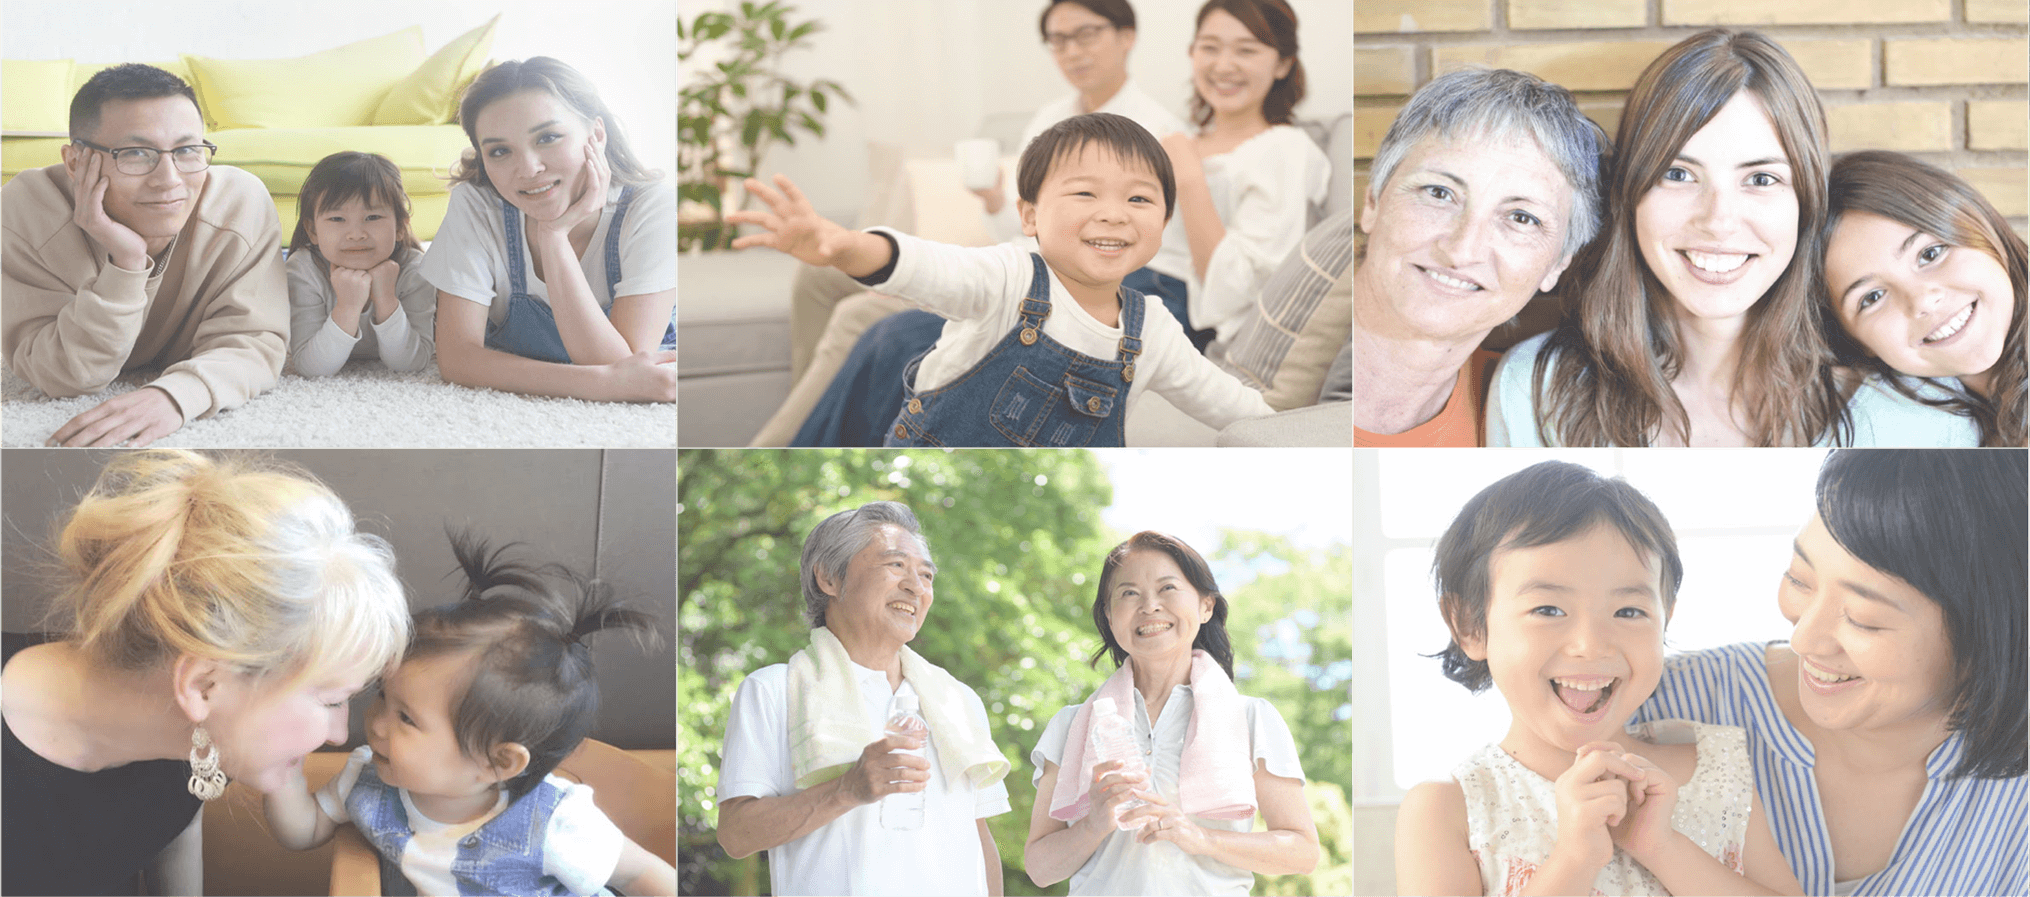 將日本的健康習慣傳遞給全世界